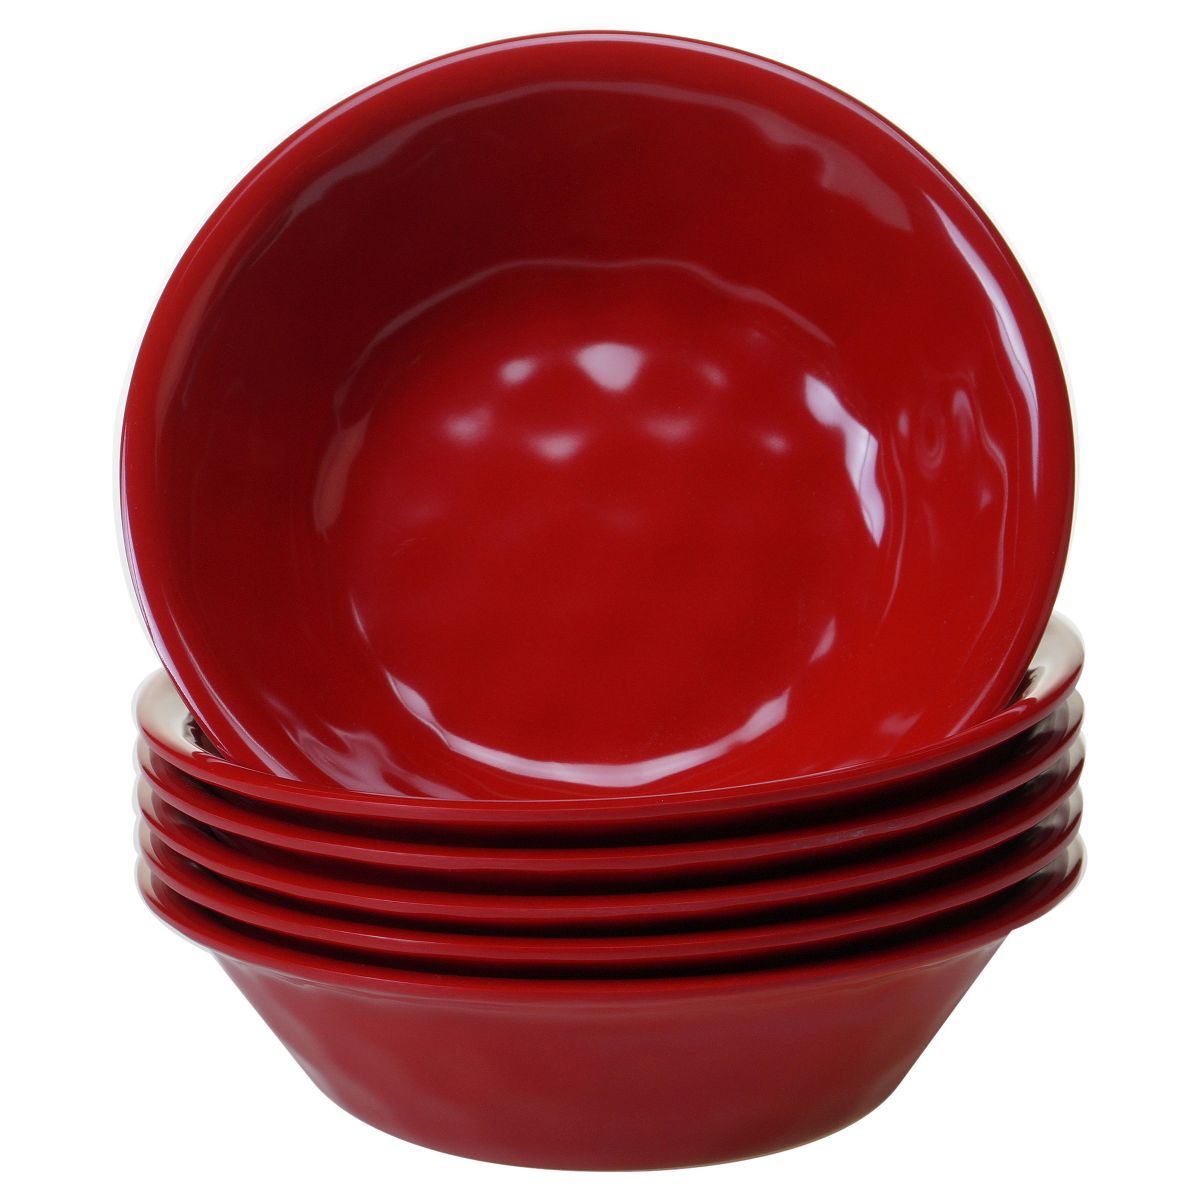 Certified International Solid Color Melamine Bowls 22oz Red - Set of 6 | Target